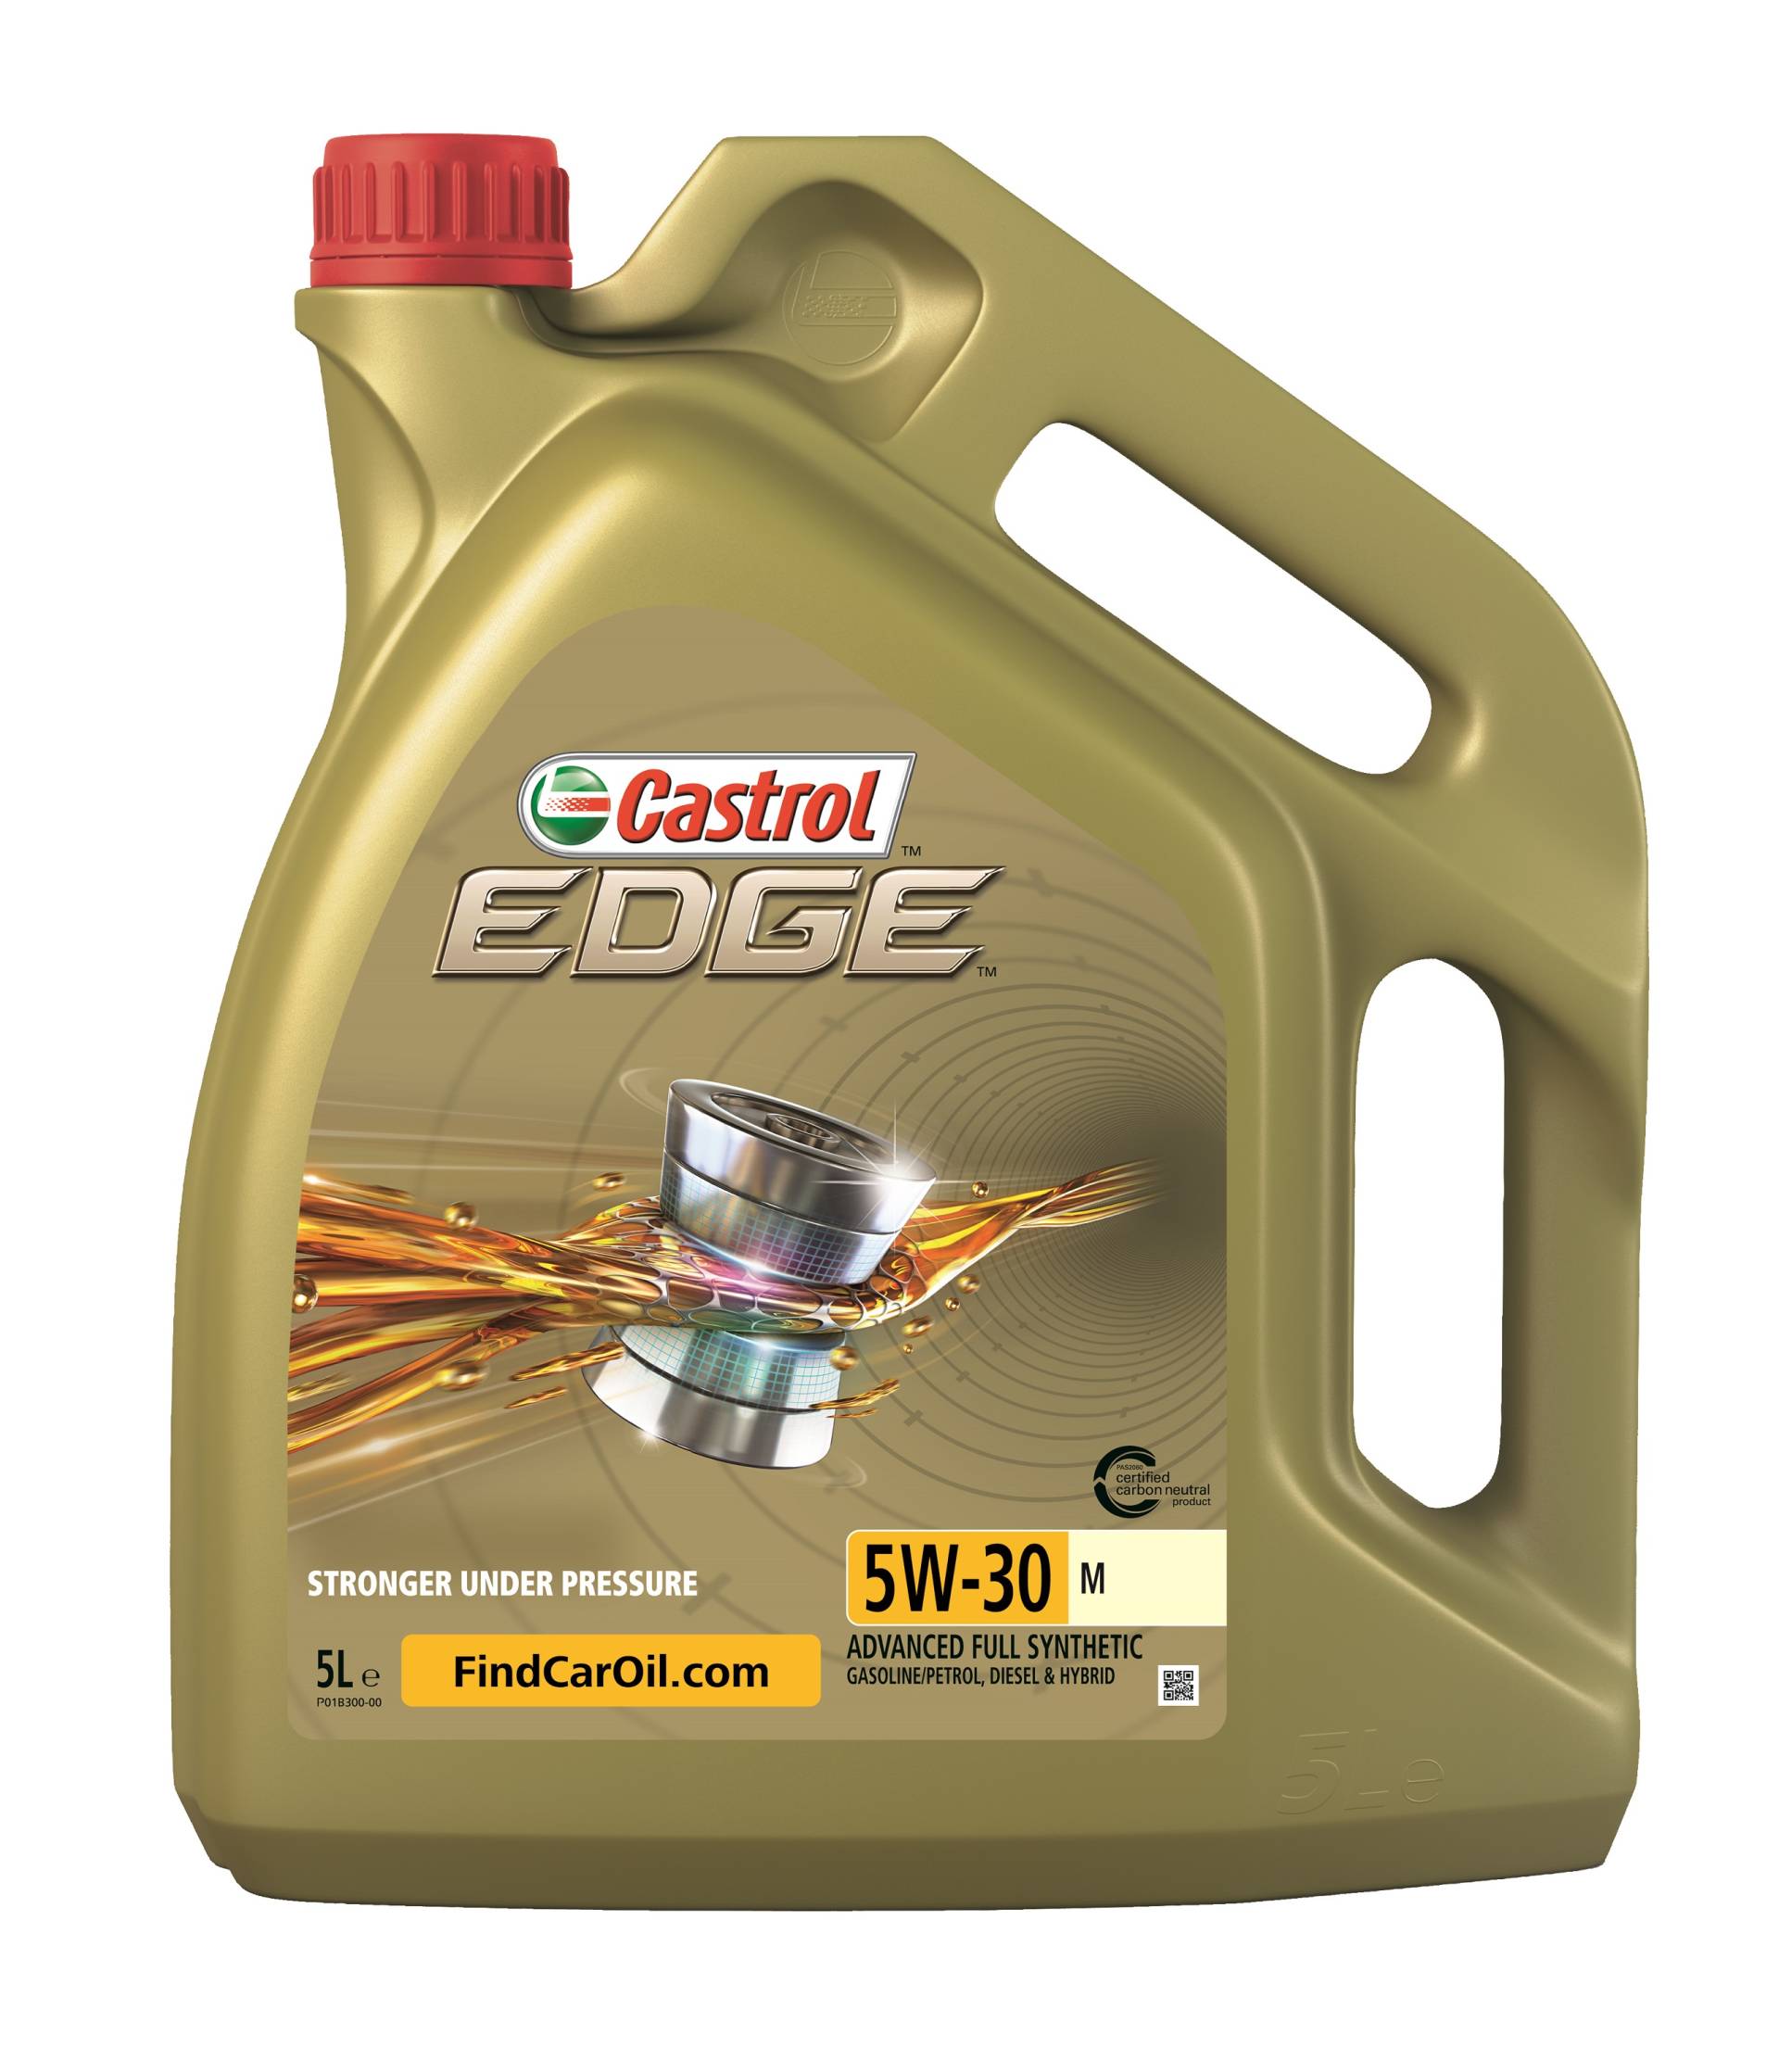 Castrol Edge 5W-30 M Motoröl, 5 Liter von Castrol